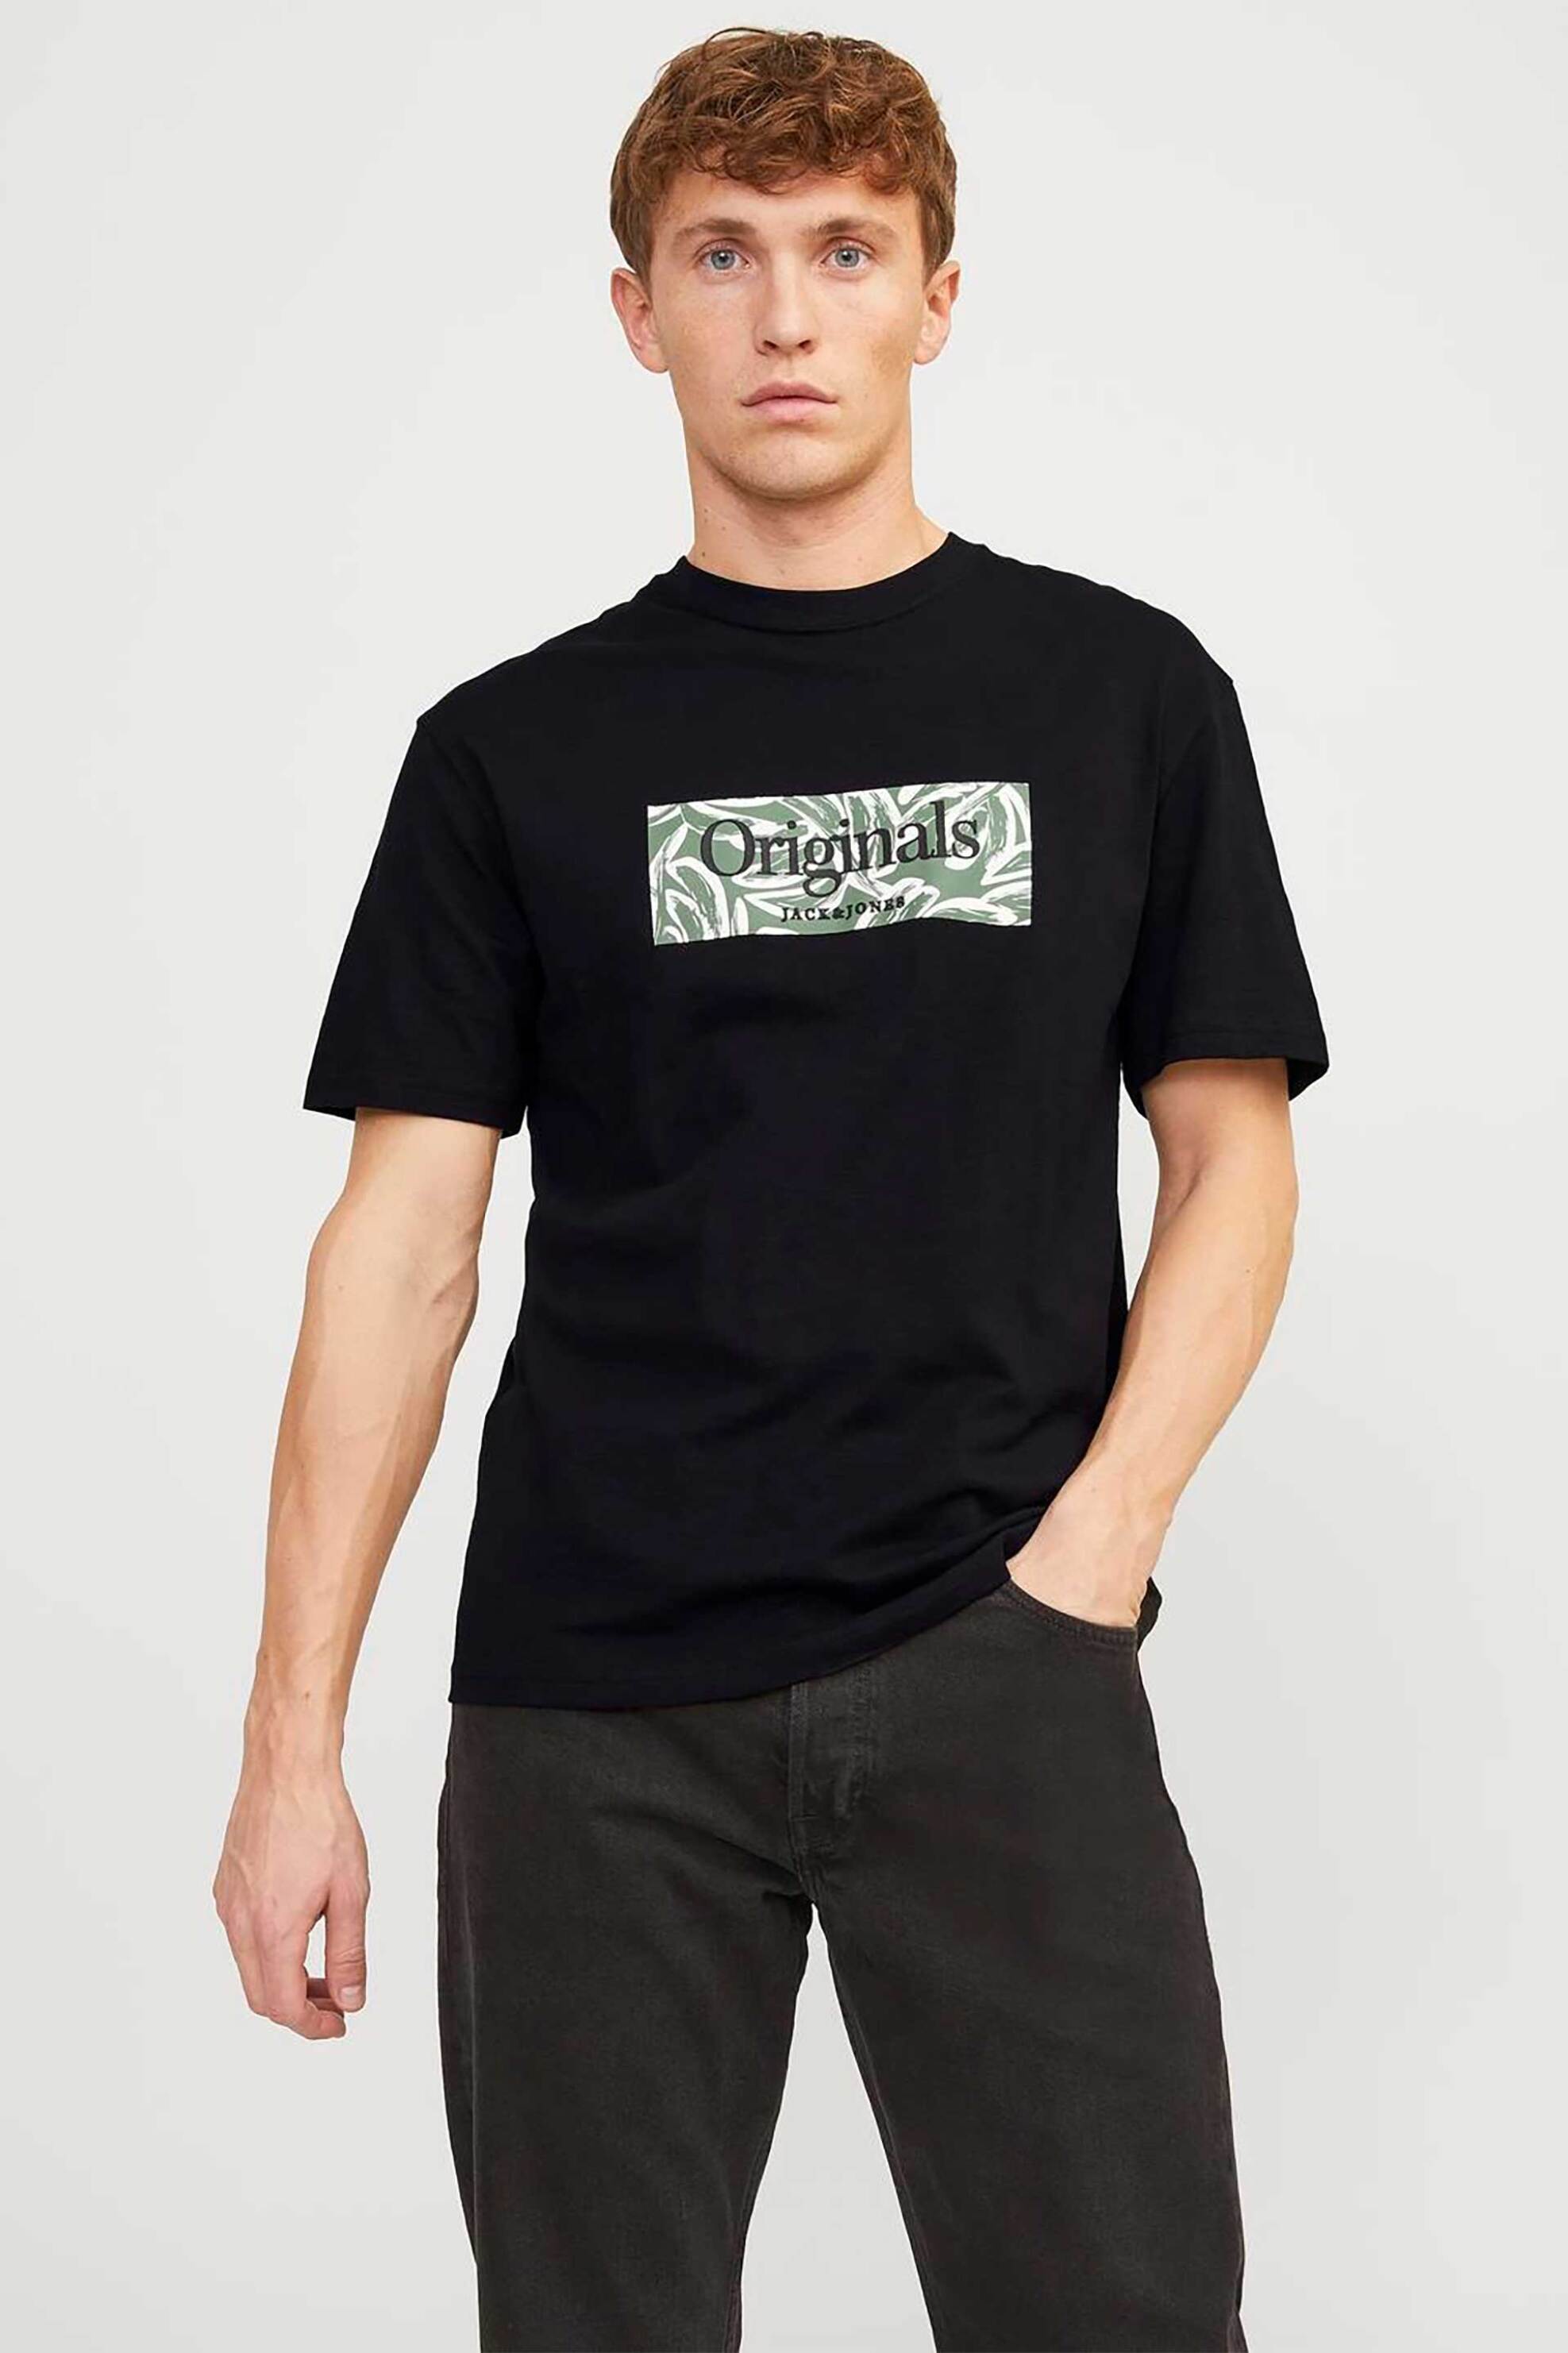 Ανδρική Μόδα > Ανδρικά Ρούχα > Ανδρικές Μπλούζες > Ανδρικά T-Shirts JACK & JONES ανδρικό T-shirt με graphic logo print Relaxed Fit - 12250436 Μαύρο